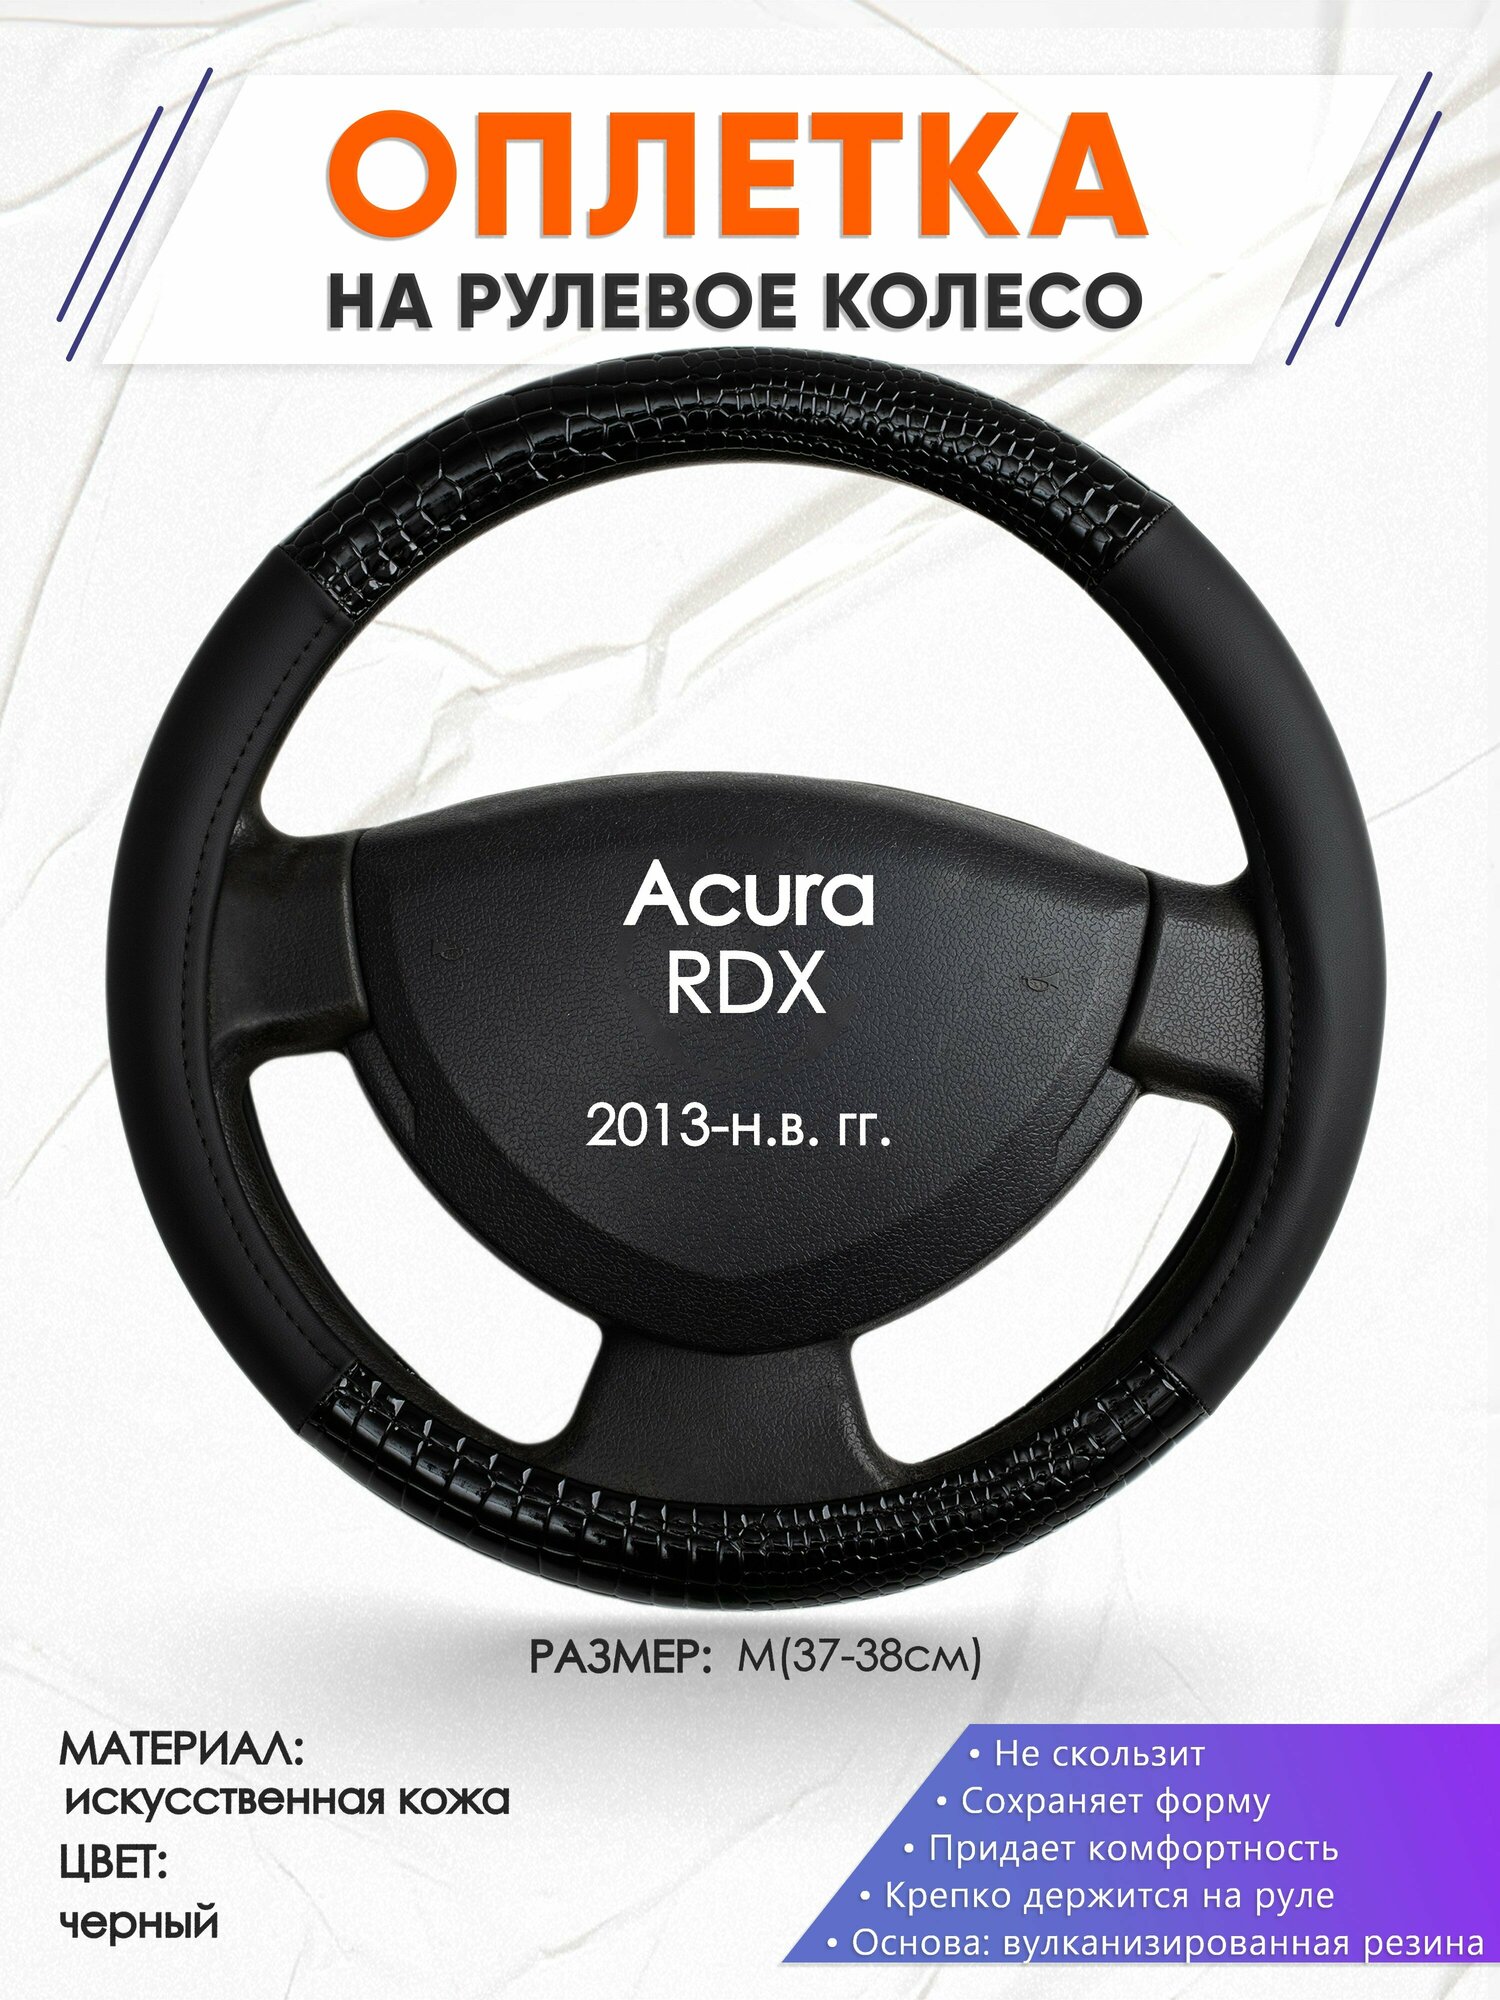 Оплетка наруль для Acura RDX(Акура РДХ) 2013-н. в. годов выпуска, размер M(37-38см), Искусственная кожа 83